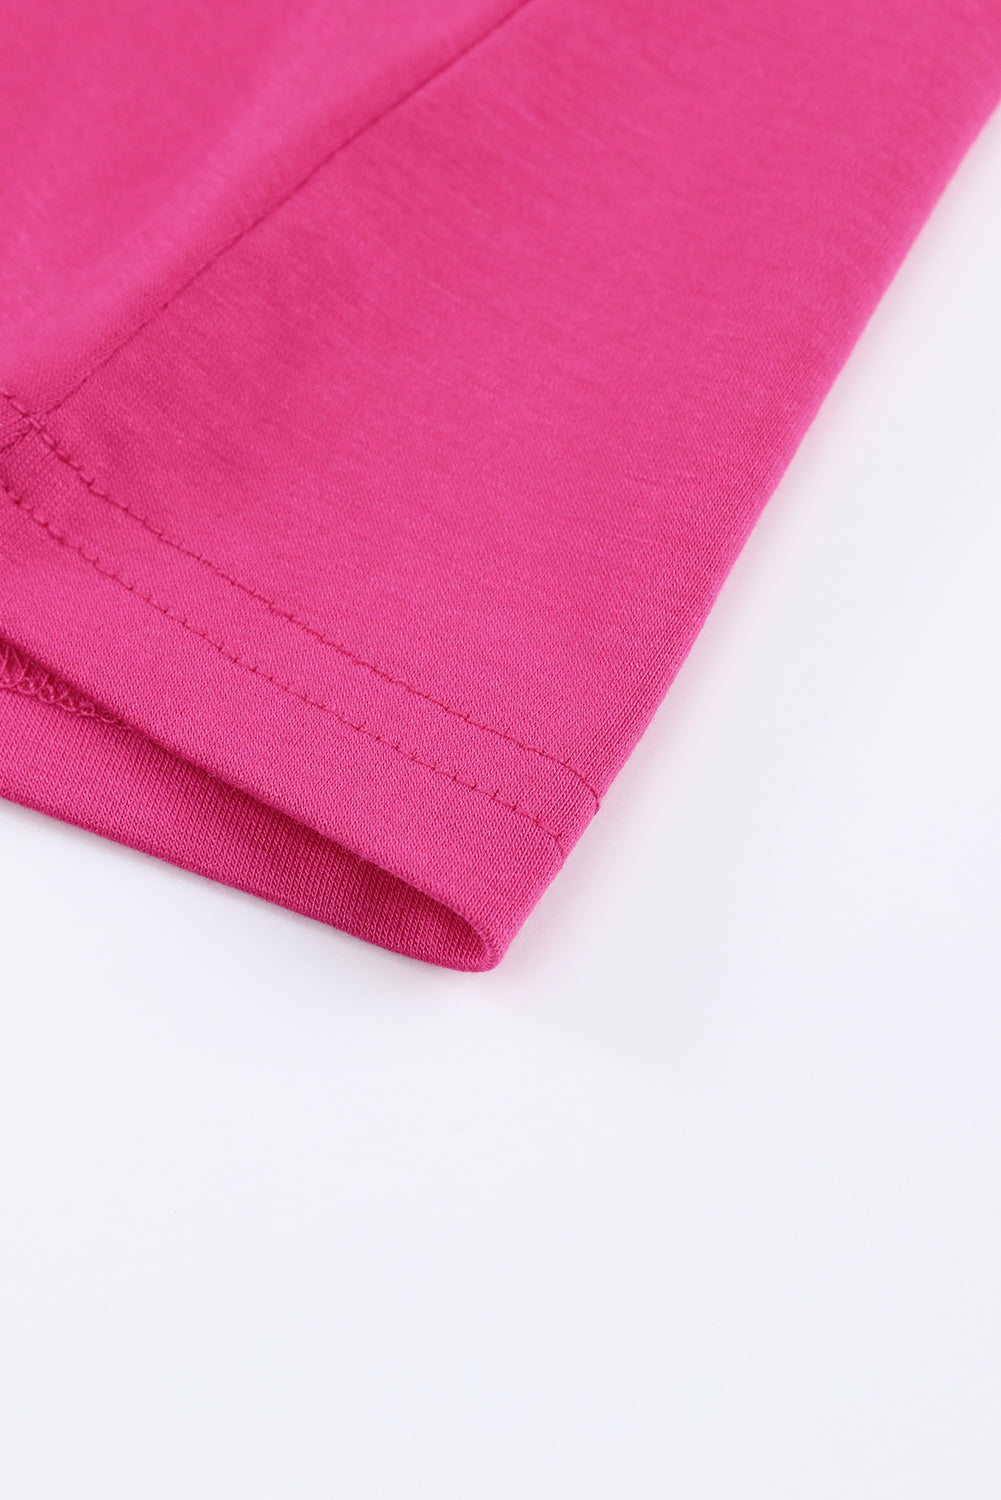 T-shirt a maniche corte incrociata con strass rosa